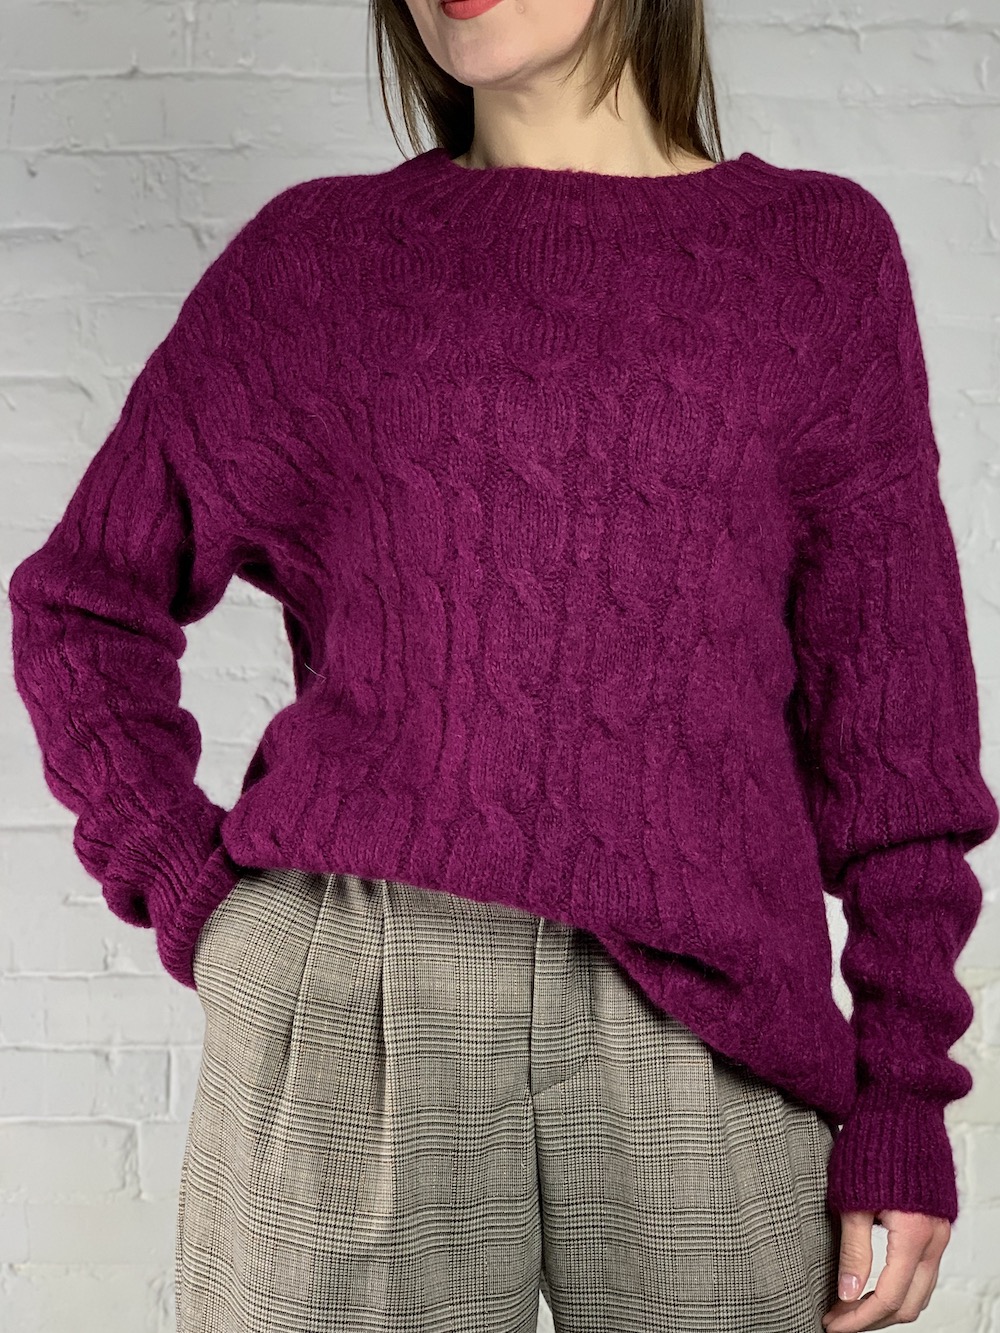 Теплый свитер ягодного цвета, итальянского бренда No-Na